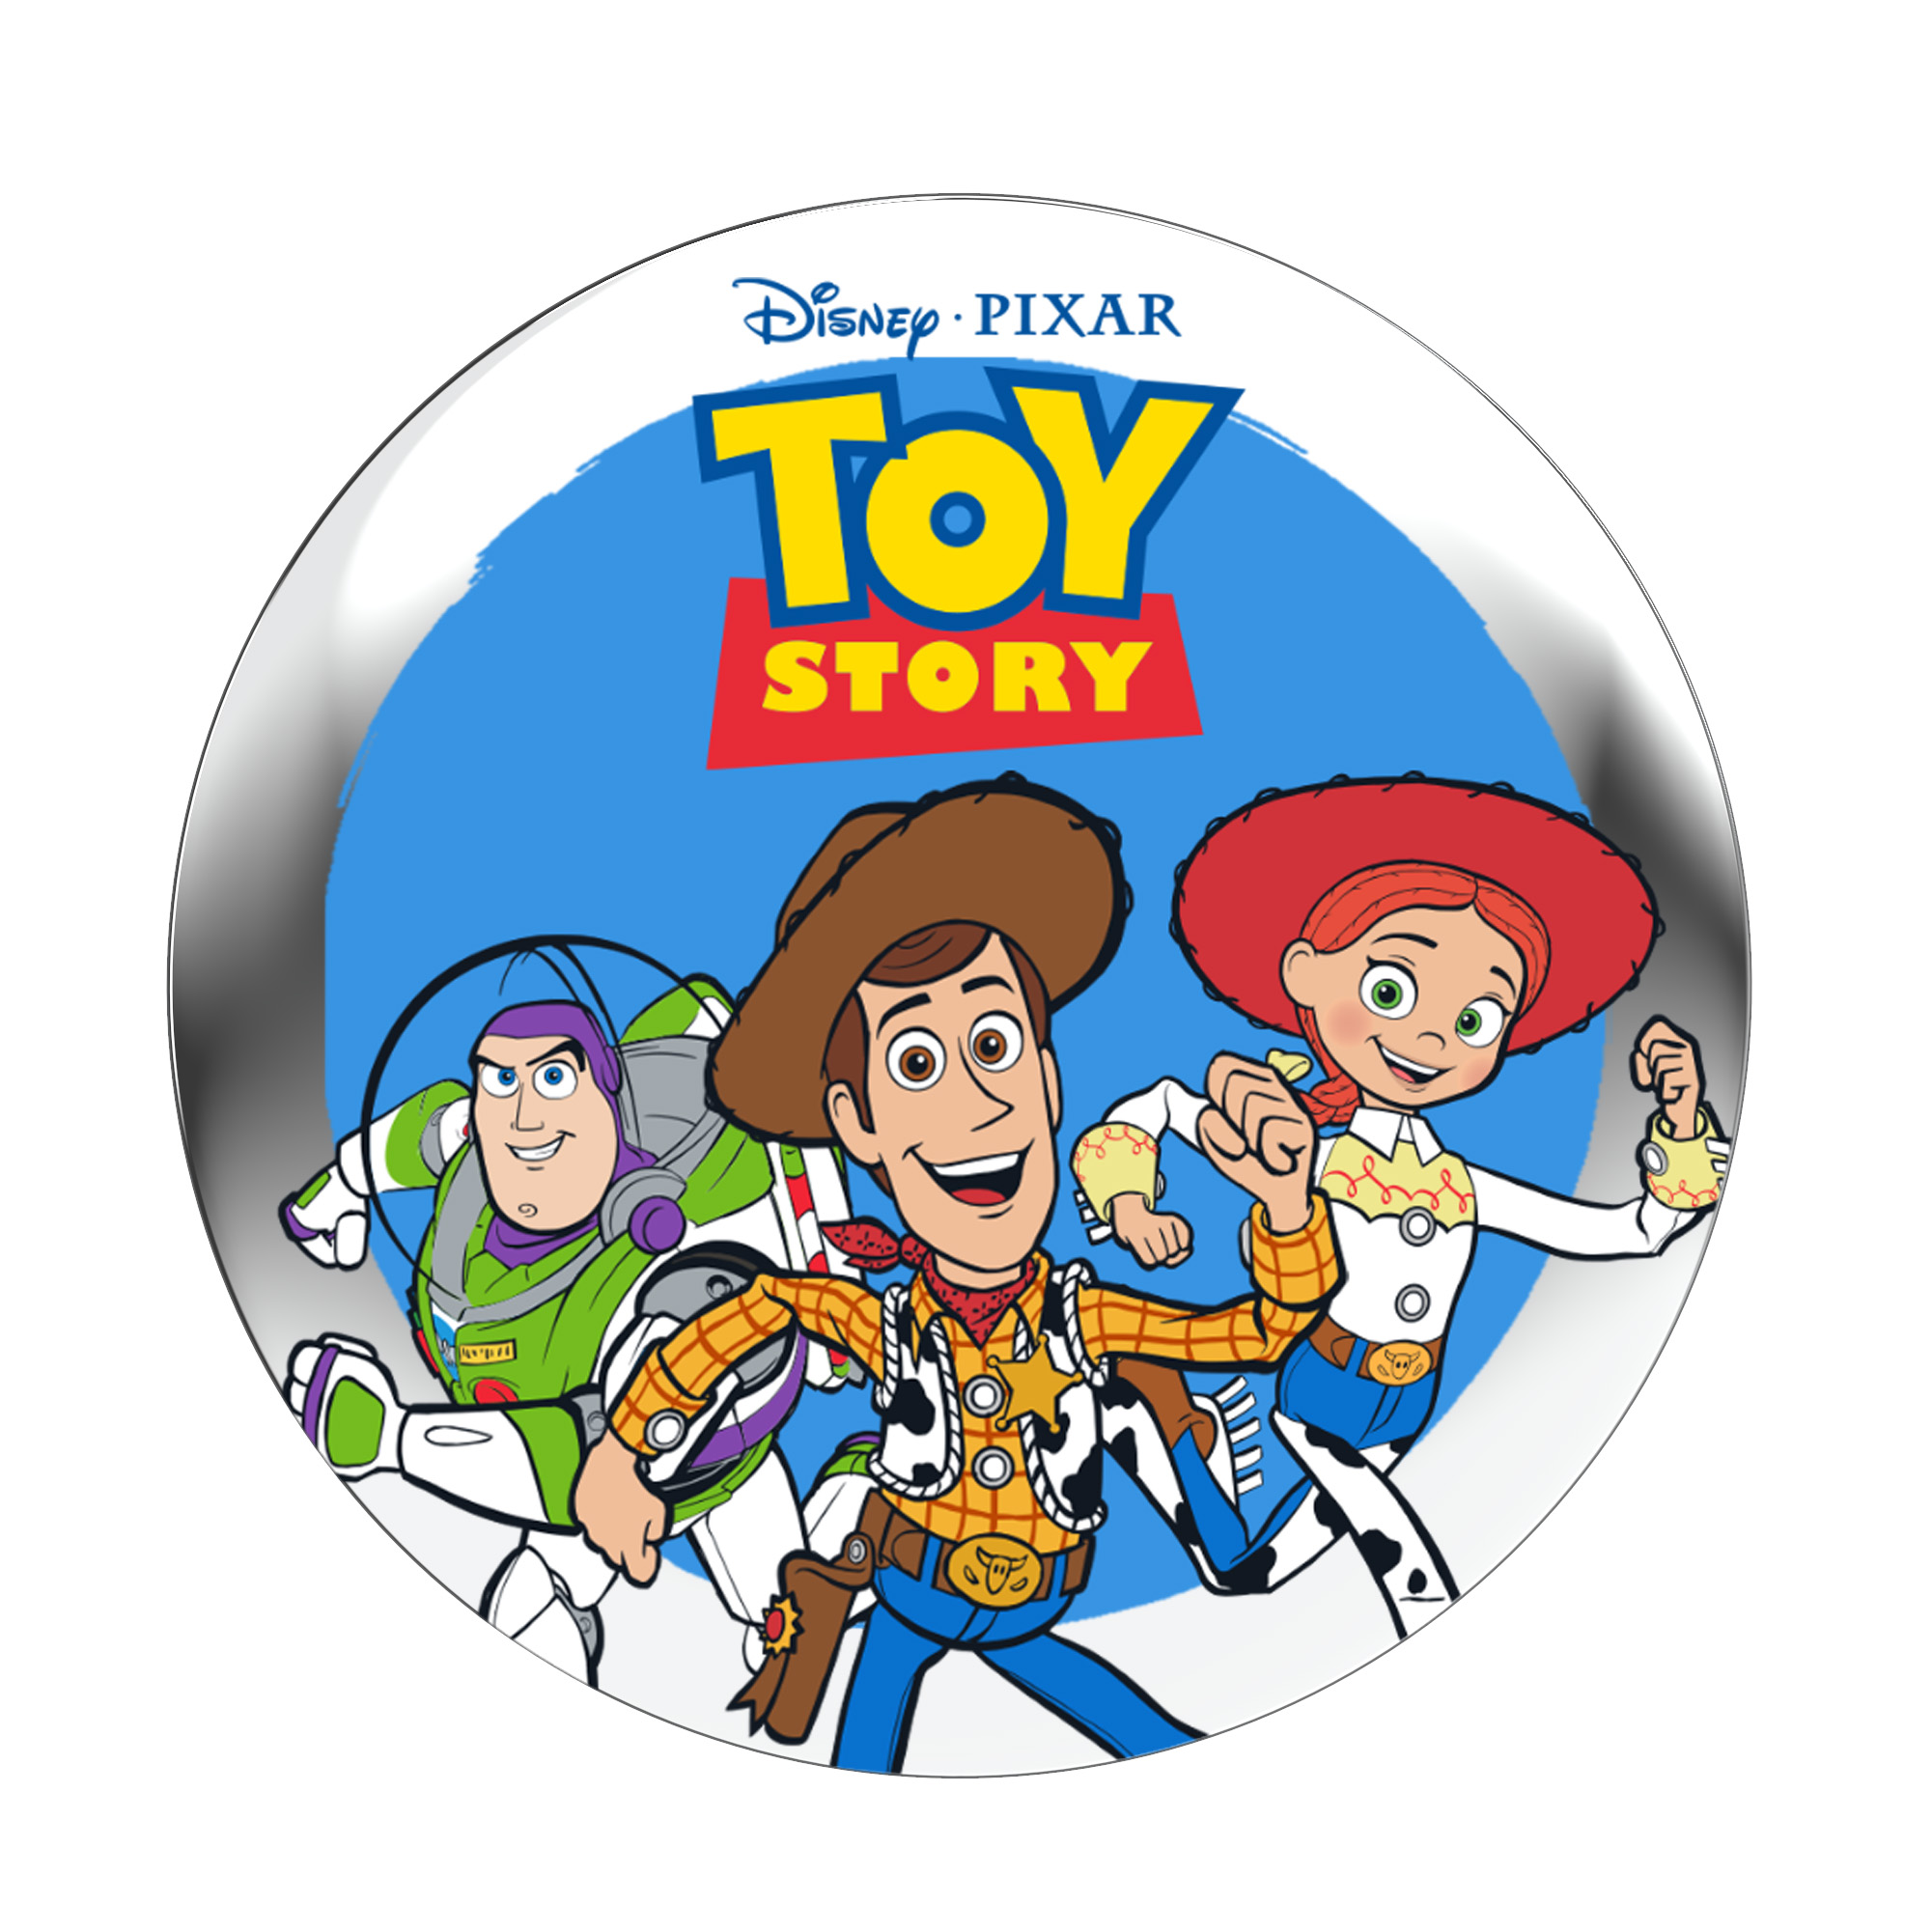  StoryShield - für Track) StoryPhones \'Toy Disney (Download - Audio - Story\' Audiogeschichte